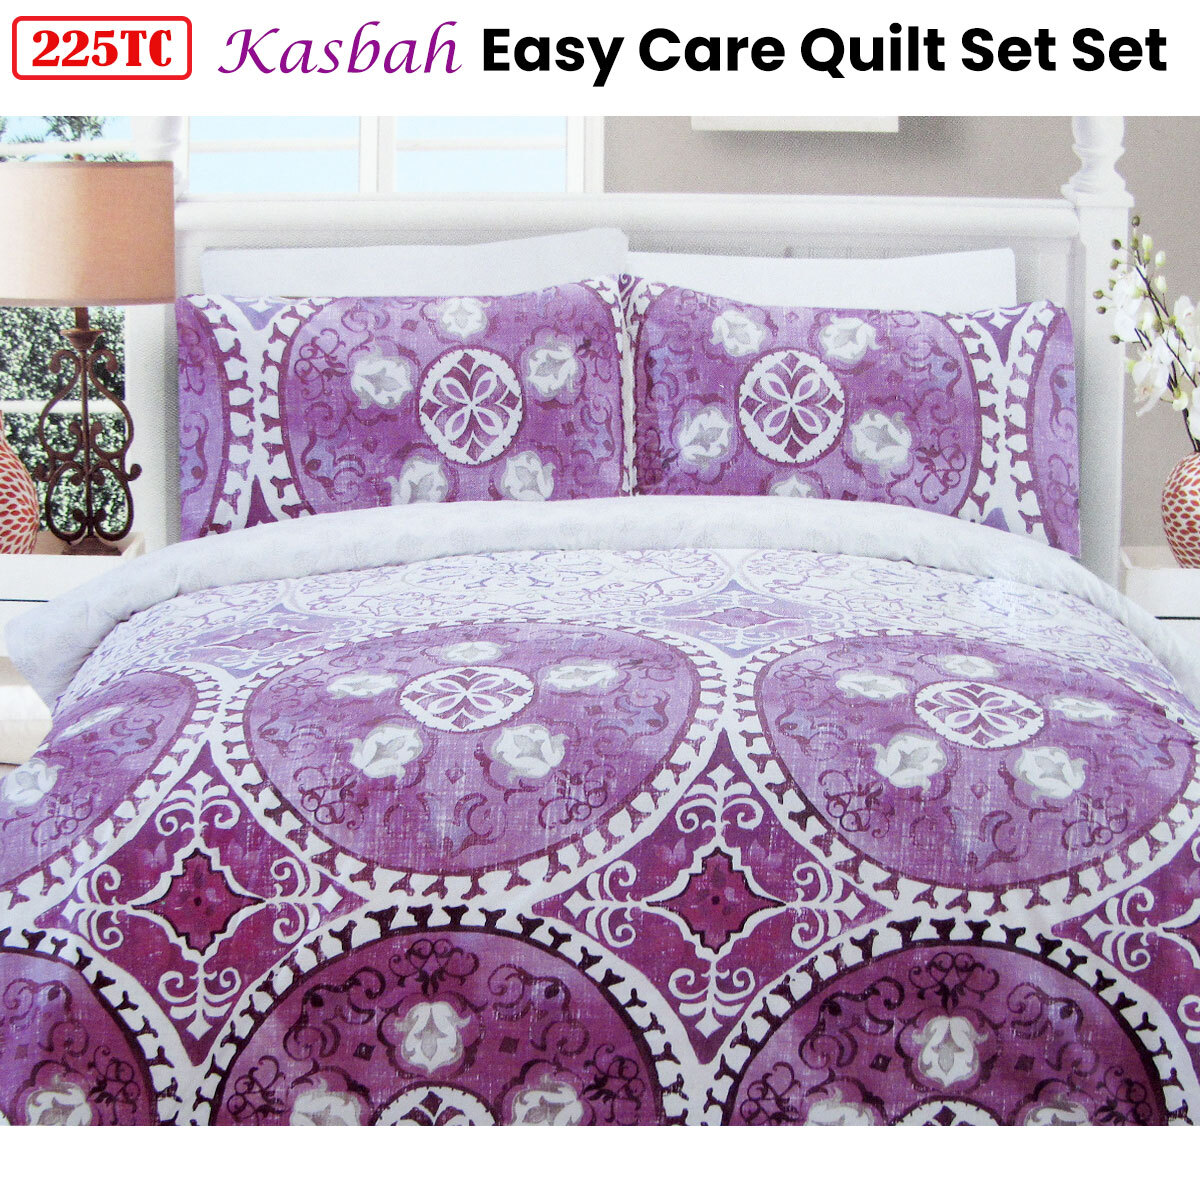 225TC Kasbah Mandala Cotton Rich Easy Care Quilt Cover Set Queen